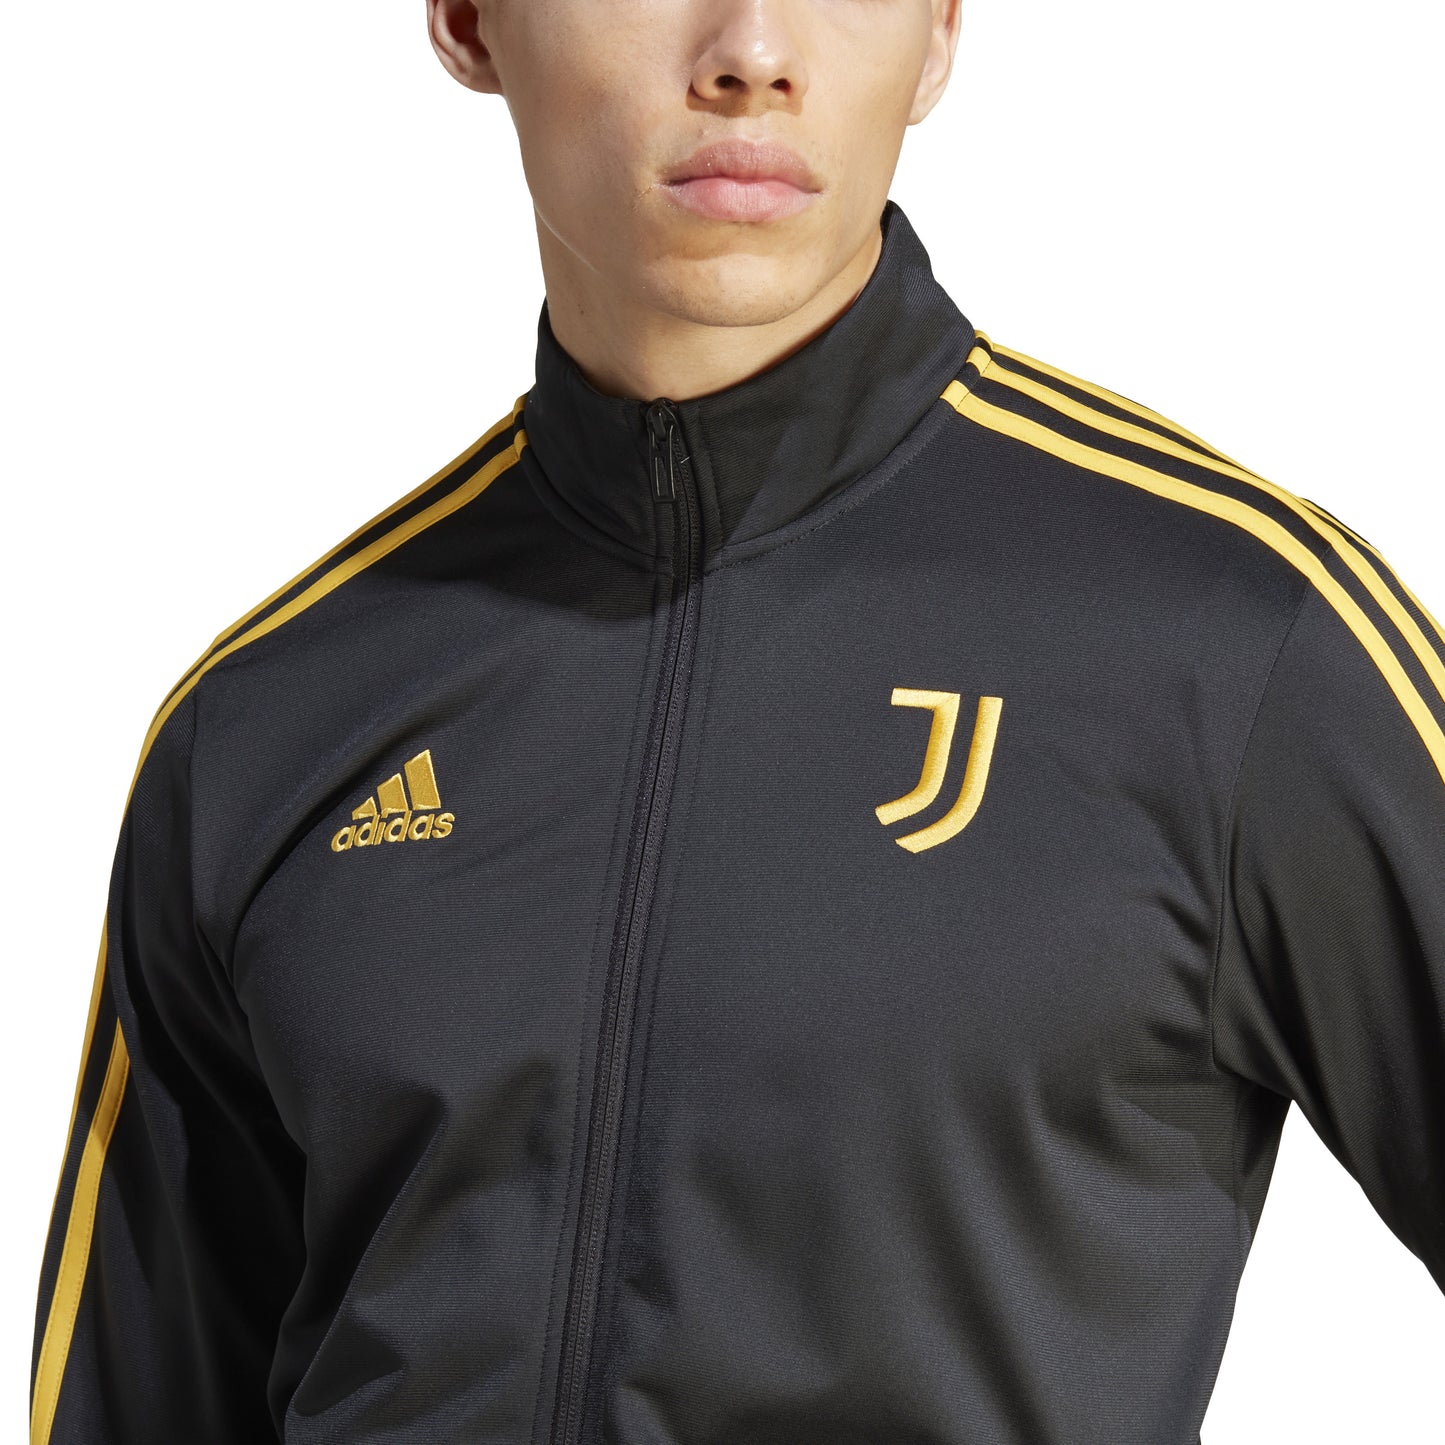 adidas Men's Juventus DNA Track Top